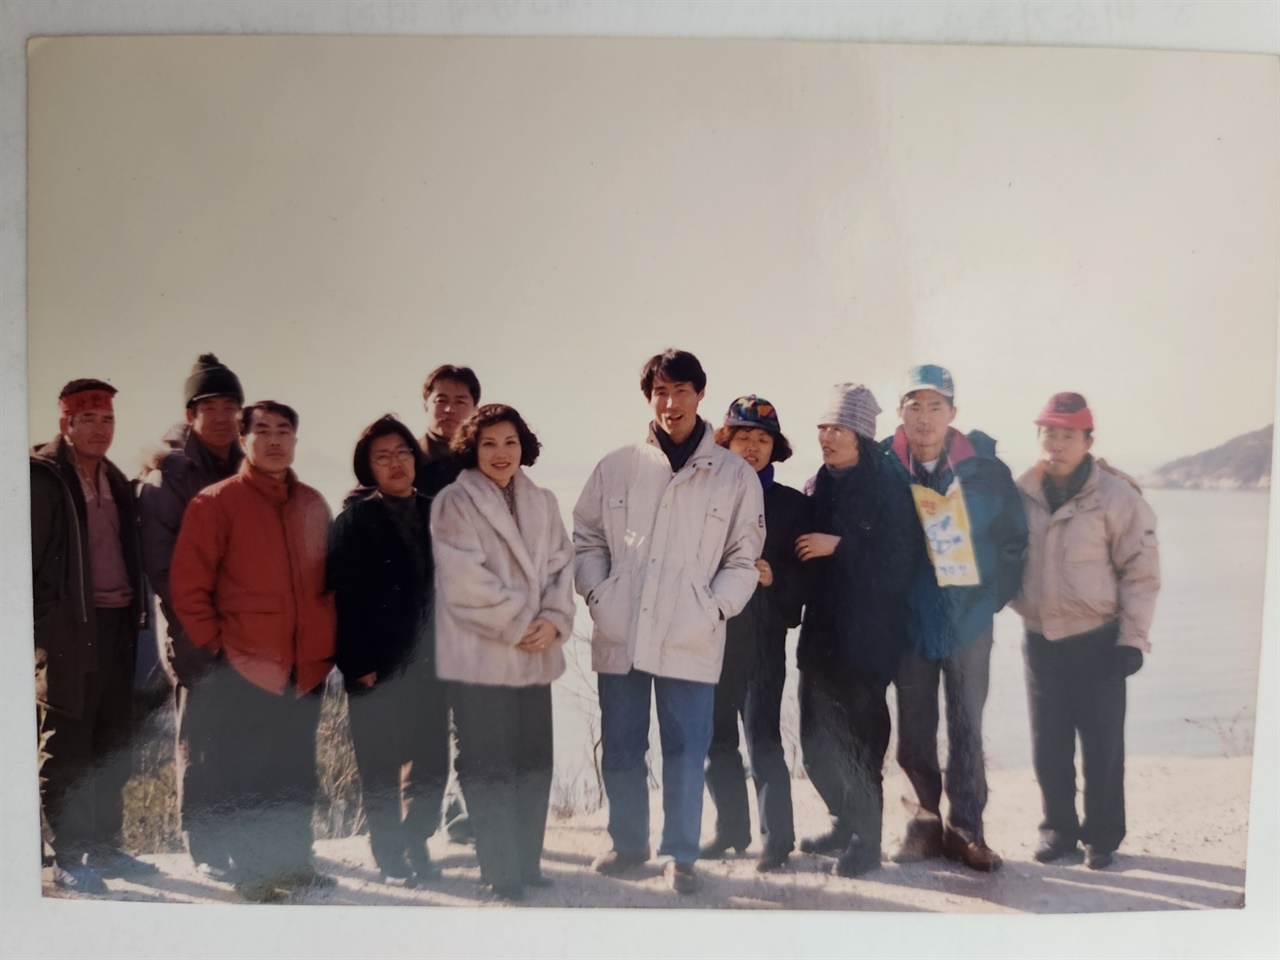 영광성당 교우들과 1995년 1월 강화군에 위치한 굴업도를 찾아 핵폐기장 반대투쟁을 지지했다. 오른쪽에서 두번째가 청년 노병남.